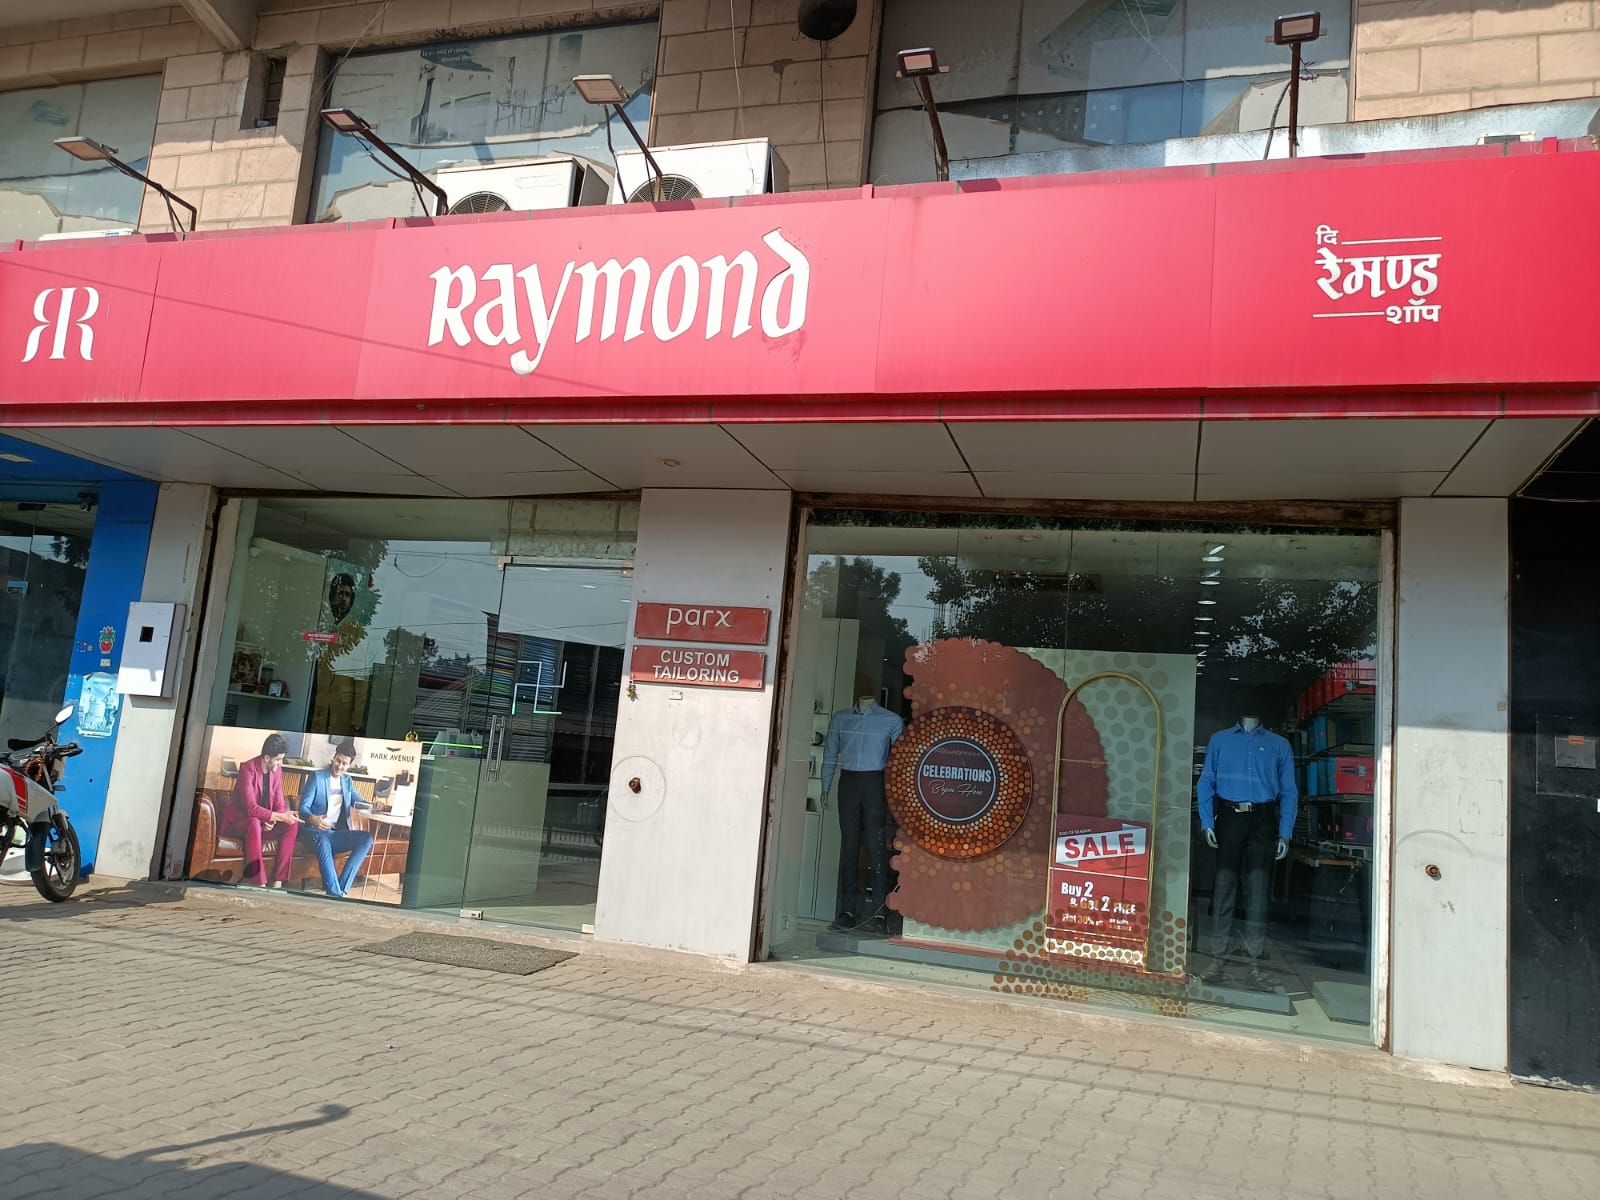  The Raymond Shop